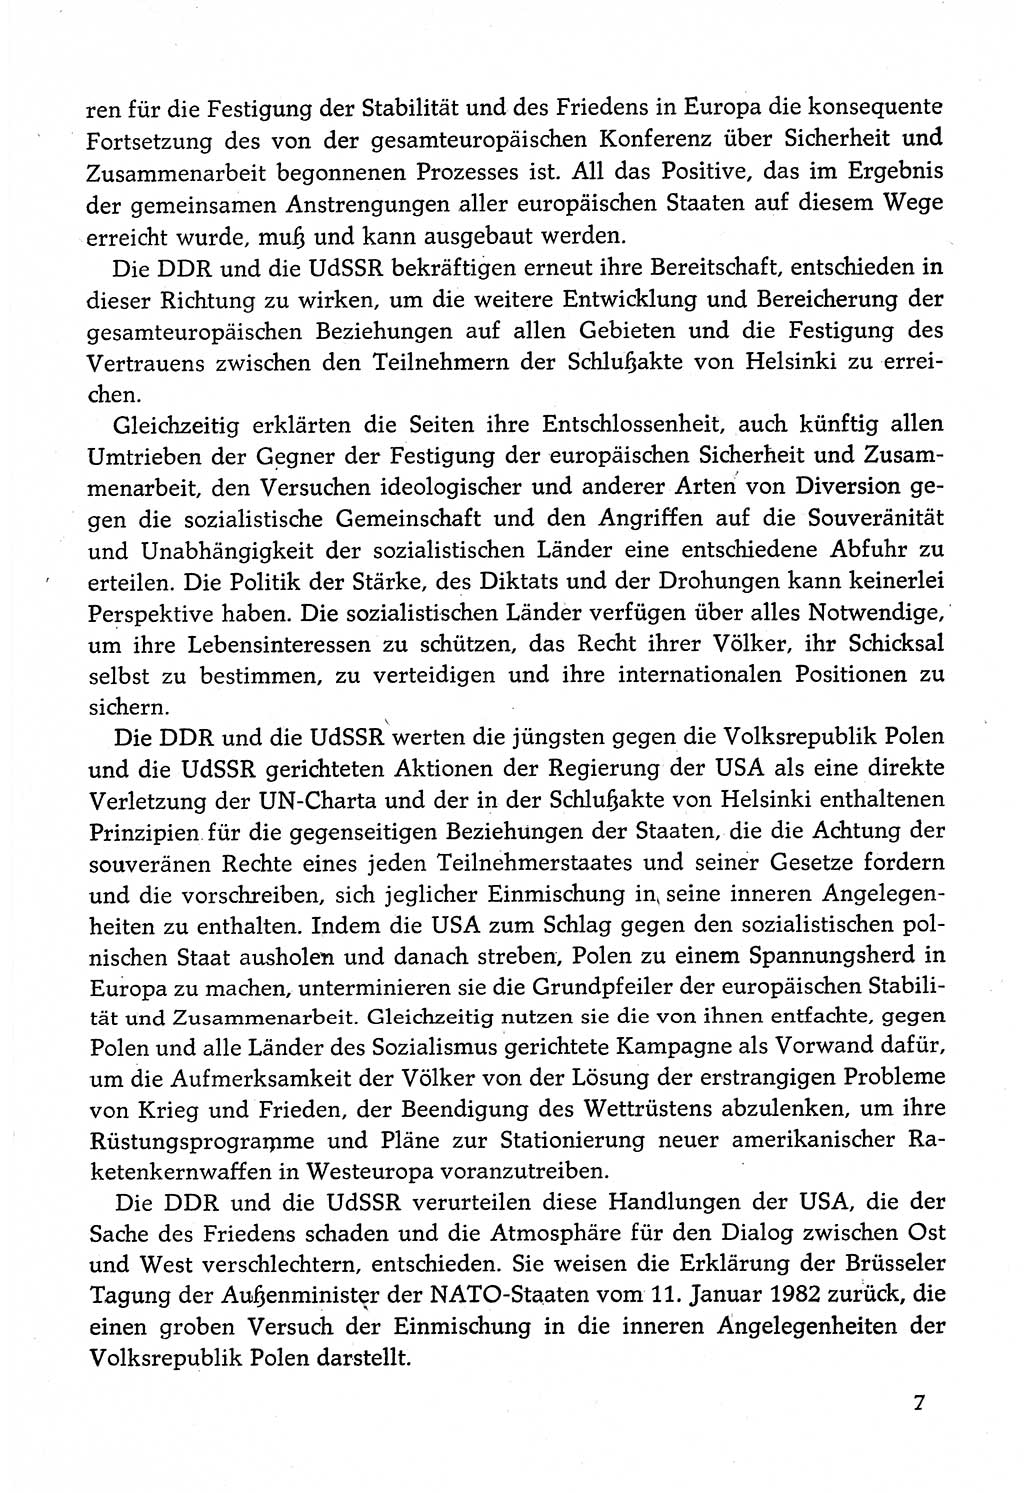 Dokumente der Sozialistischen Einheitspartei Deutschlands (SED) [Deutsche Demokratische Republik (DDR)] 1982-1983, Seite 7 (Dok. SED DDR 1982-1983, S. 7)